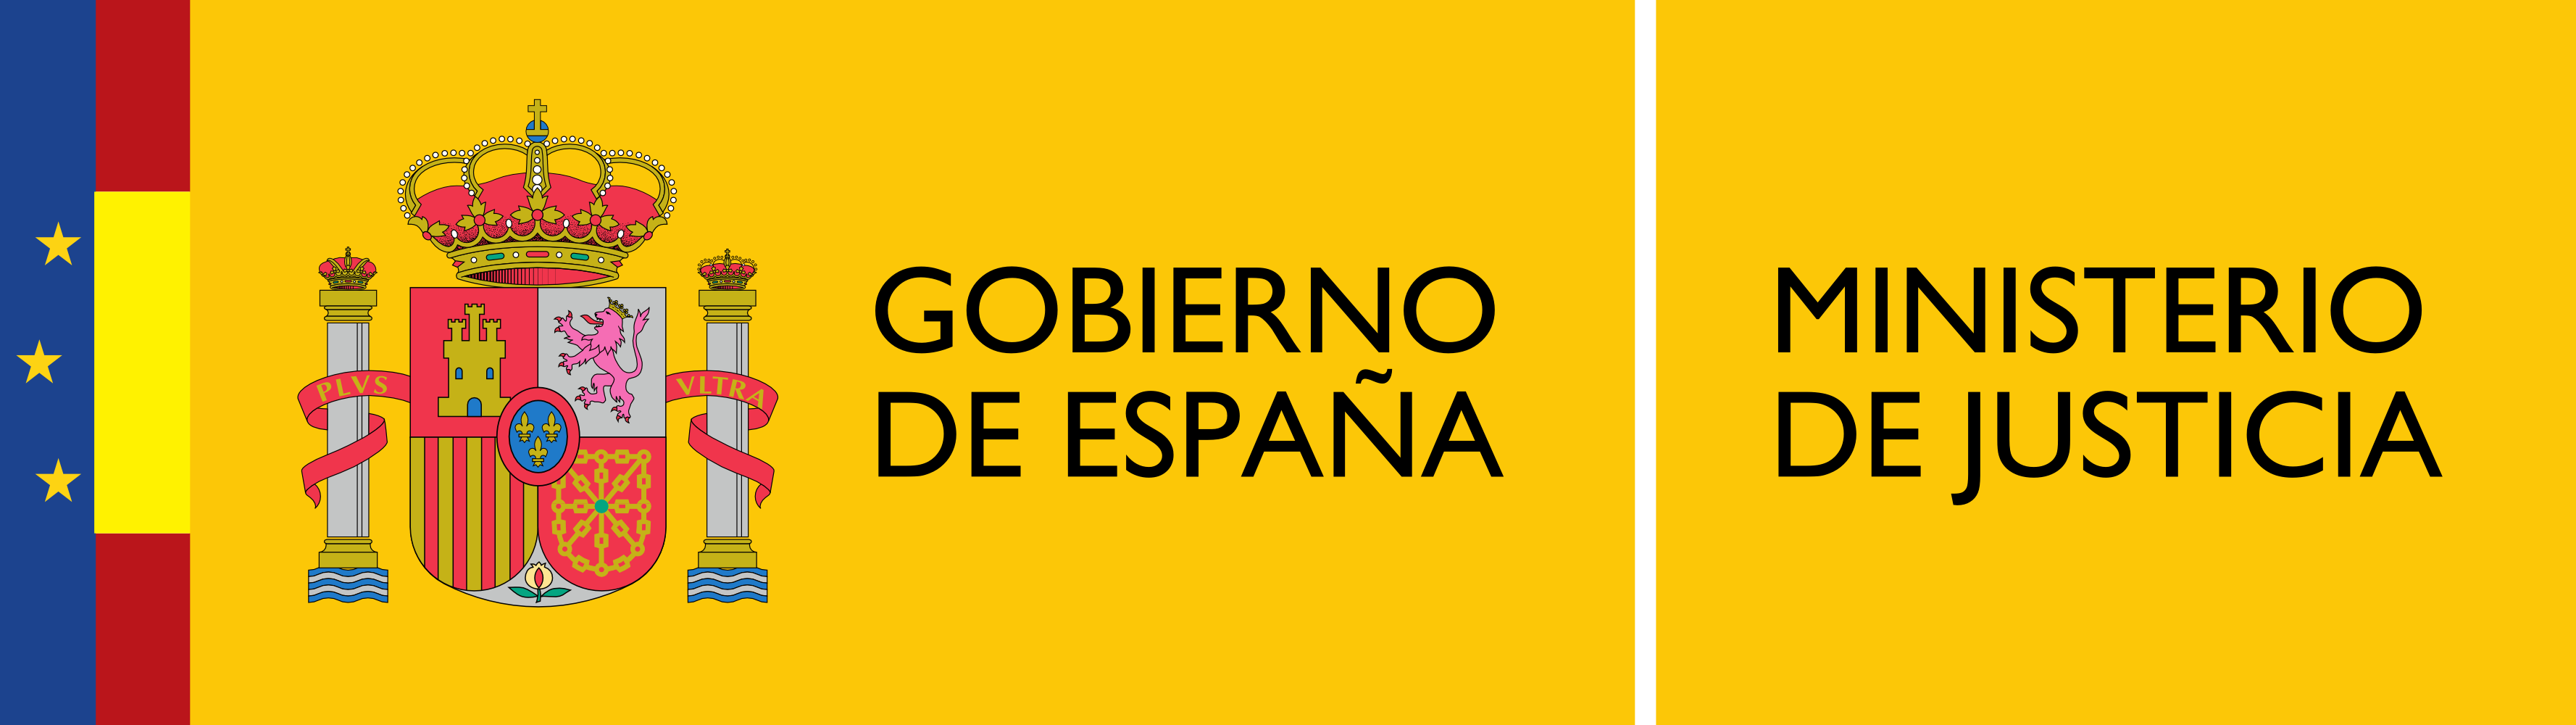 Logotipo_del_Ministerio_de_Justicia